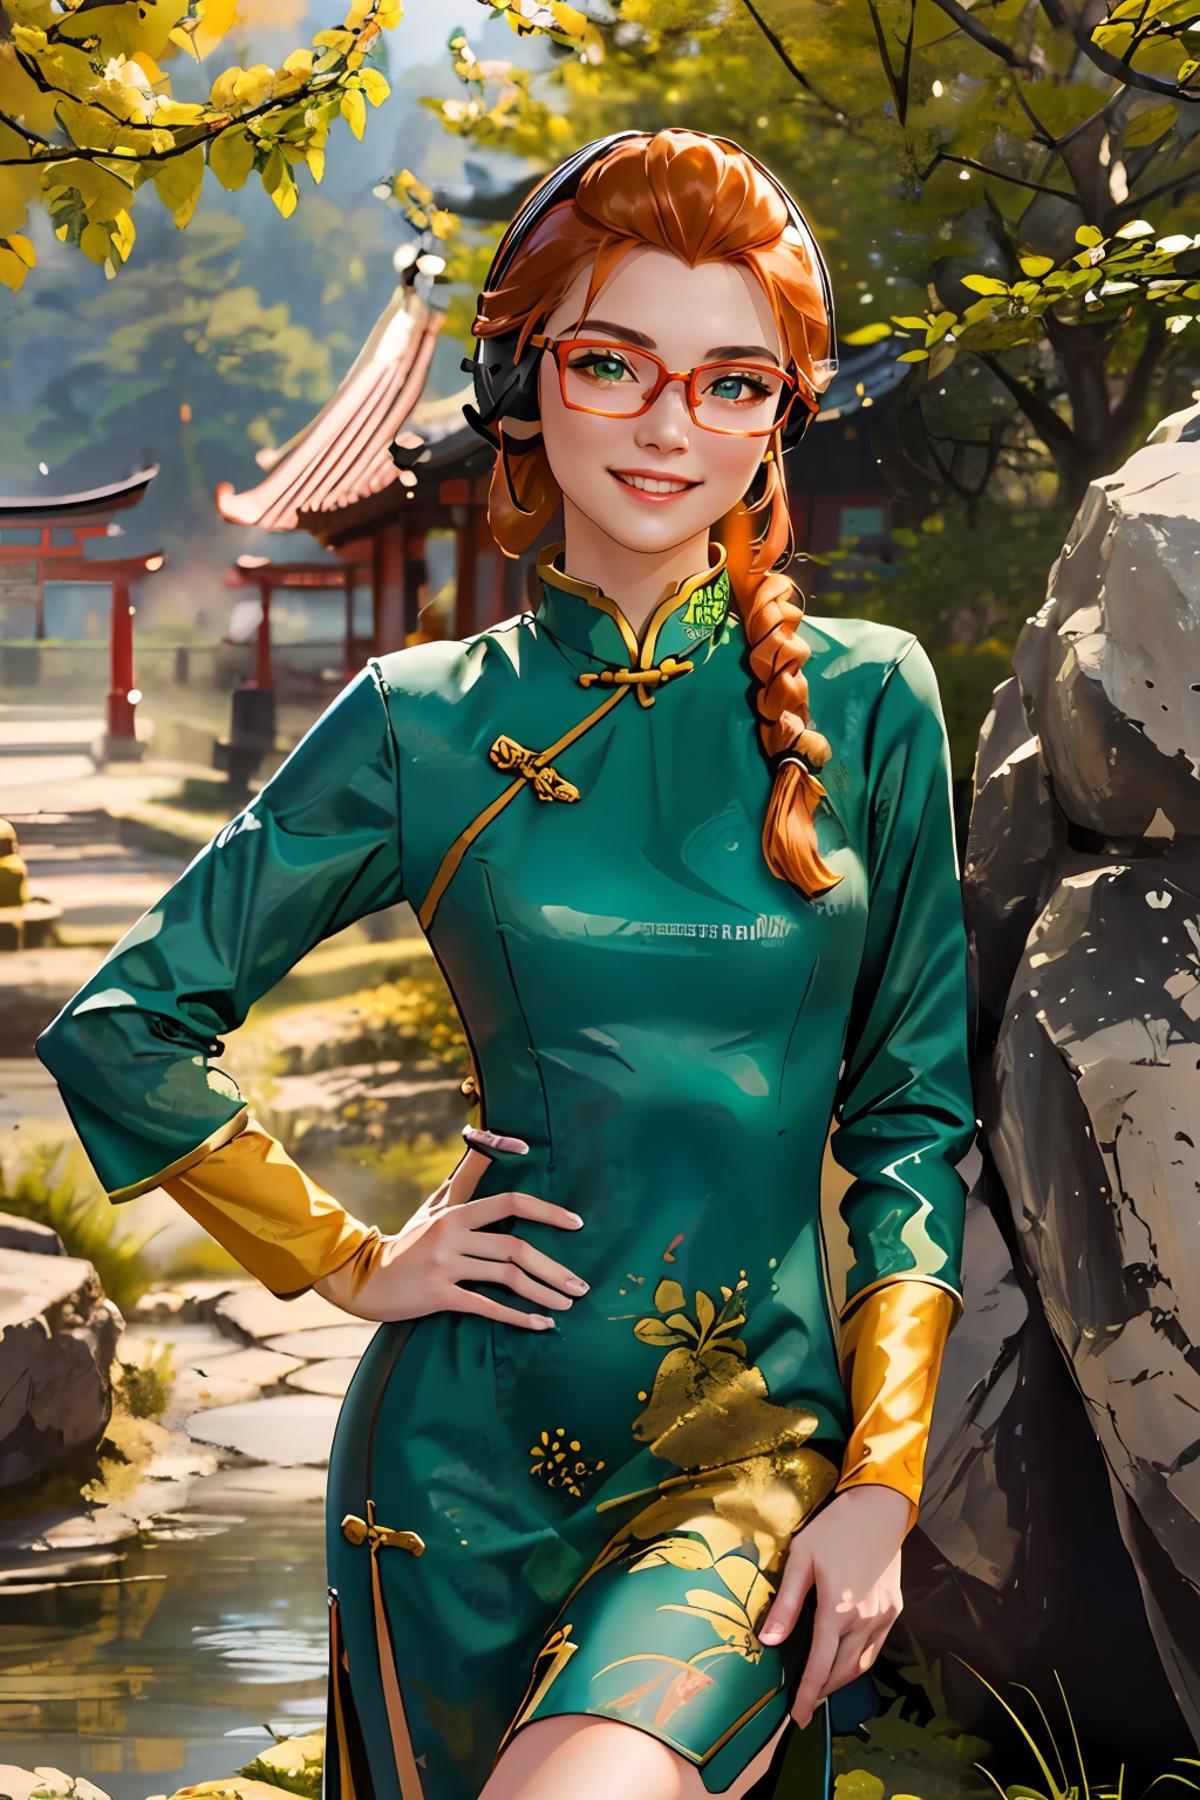 Chinese dress (NSFW) image by wikkitikki